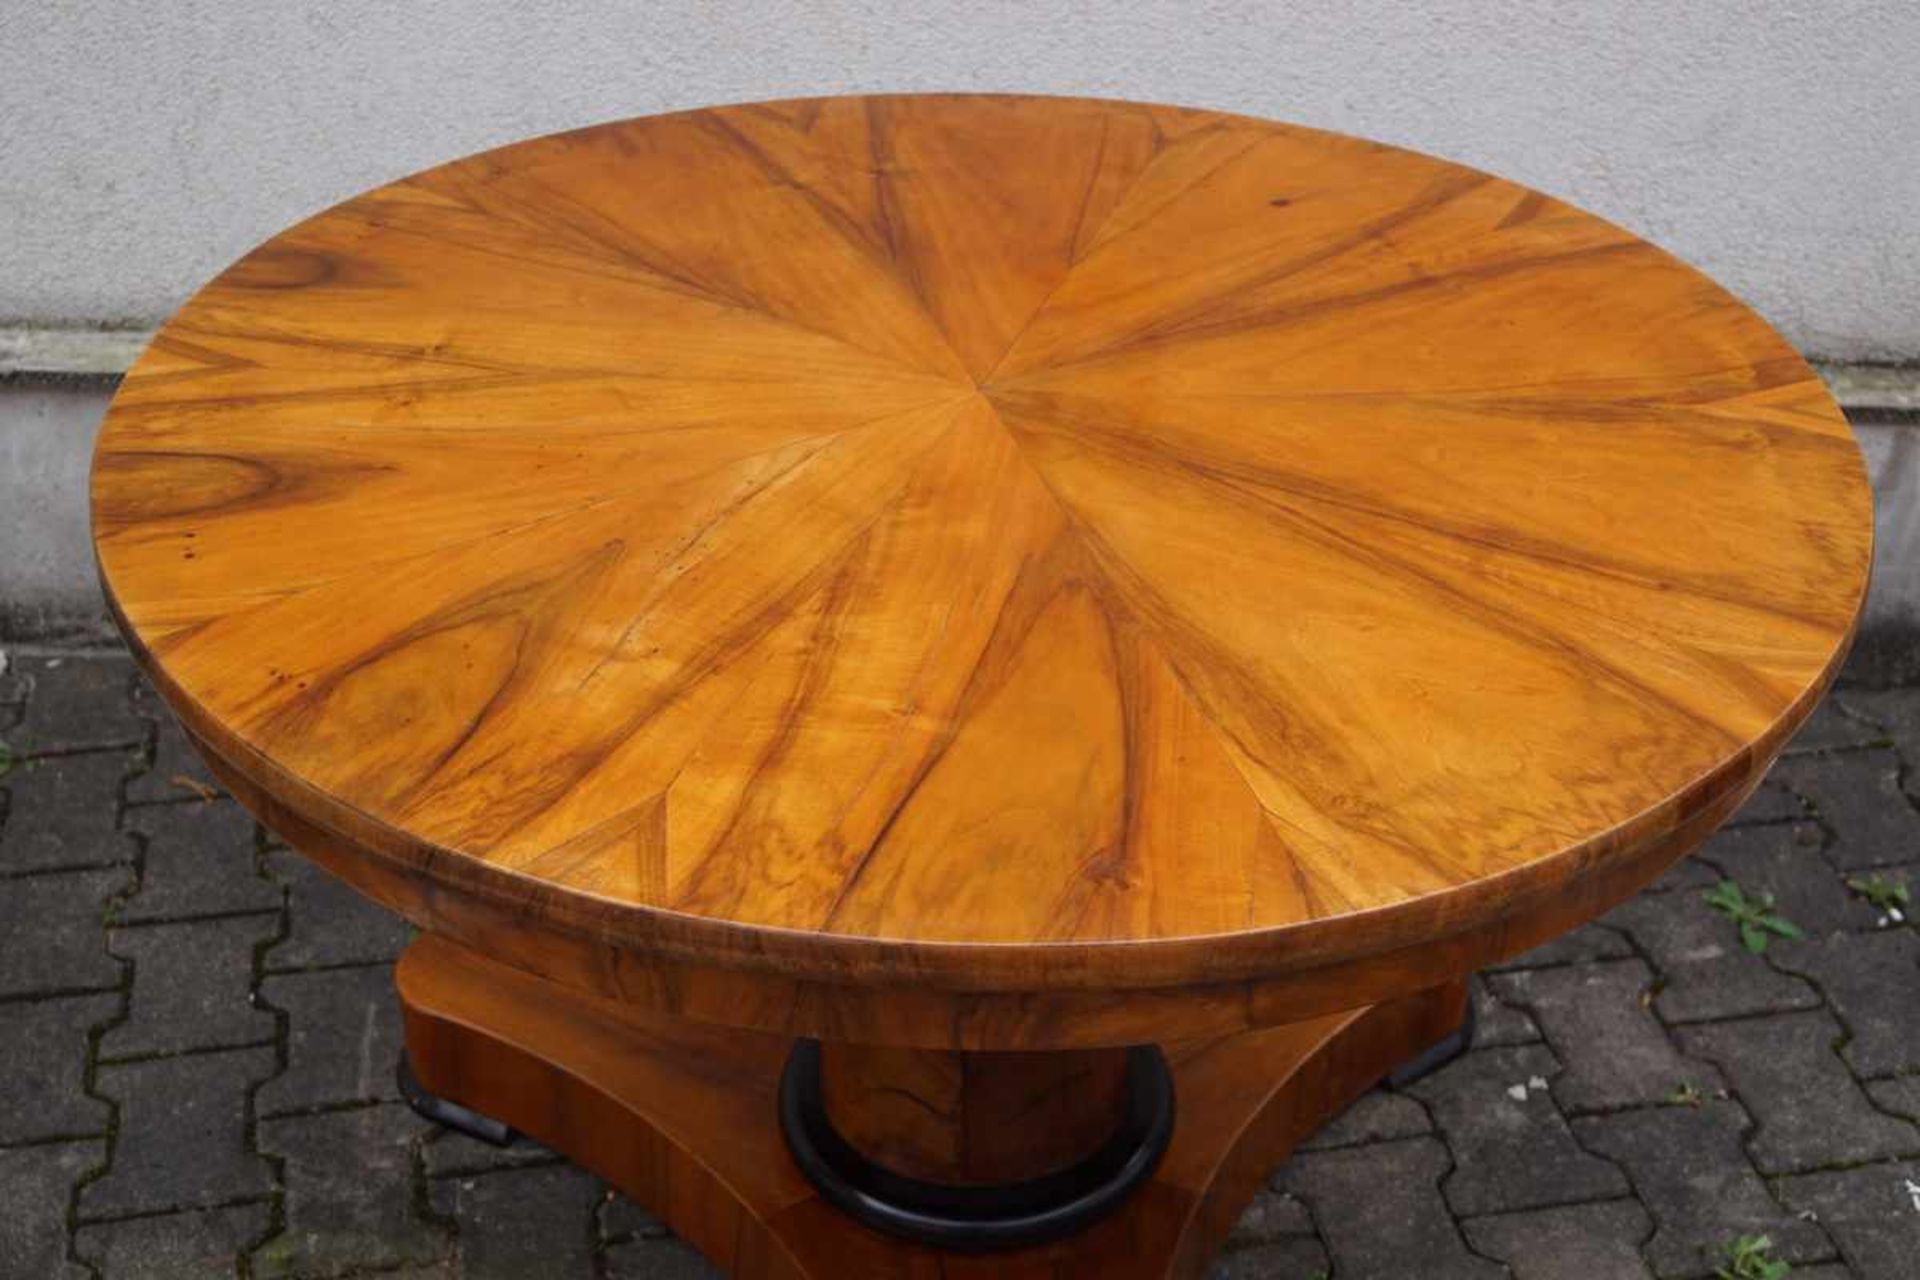 Runder Tisch des Biedermeier, süddeutsch um 1835 Nussbaum auf Weichholz furniert, der Fuß in Form - Image 2 of 2